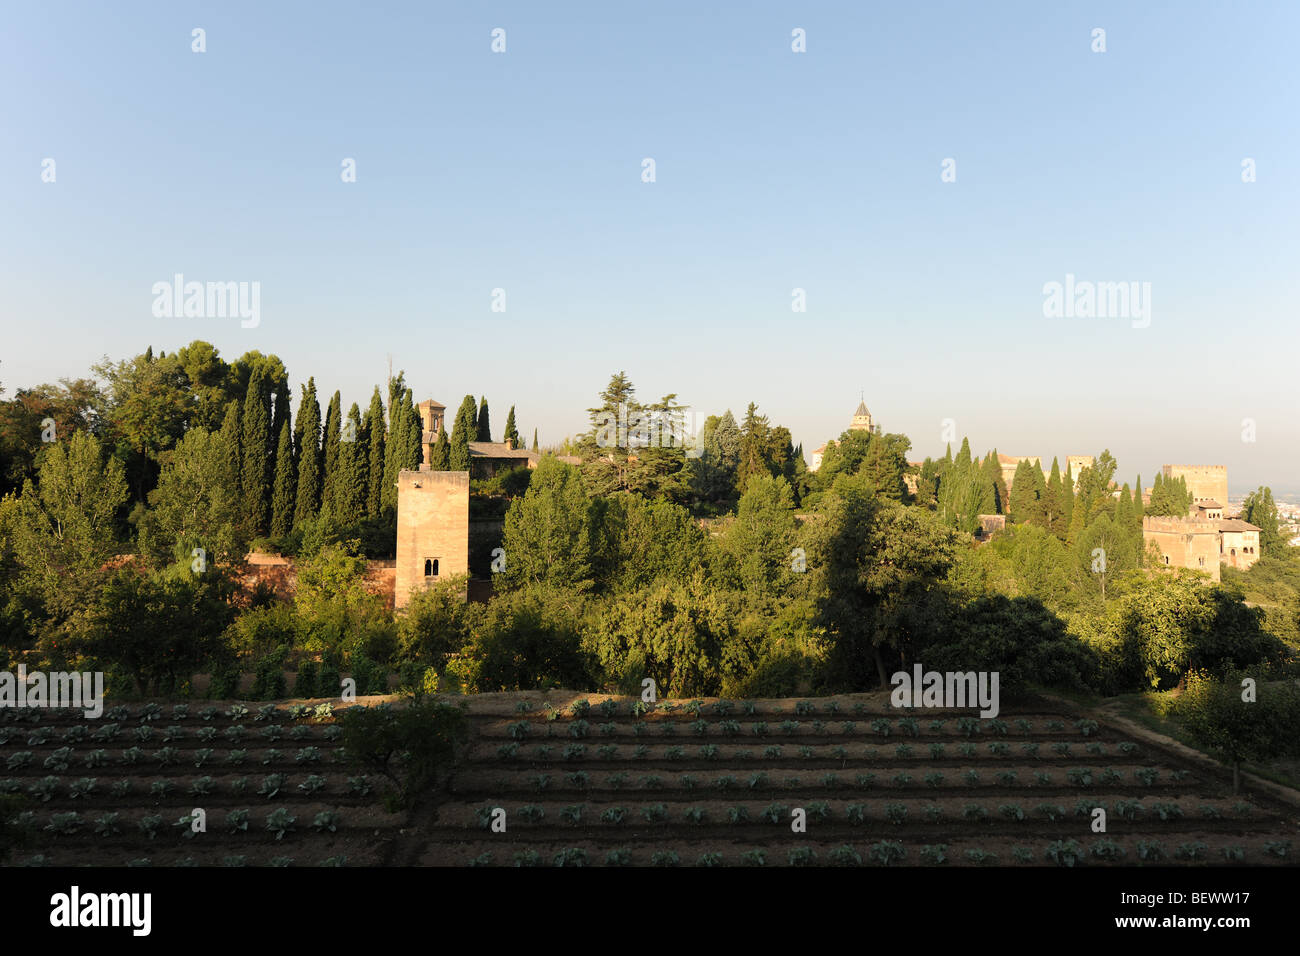 Vue des jardins du Generalife vers le Palace, palais de l'Alhambra Alcazaba et complexe, Grenade, Andalousie, Espagne Banque D'Images